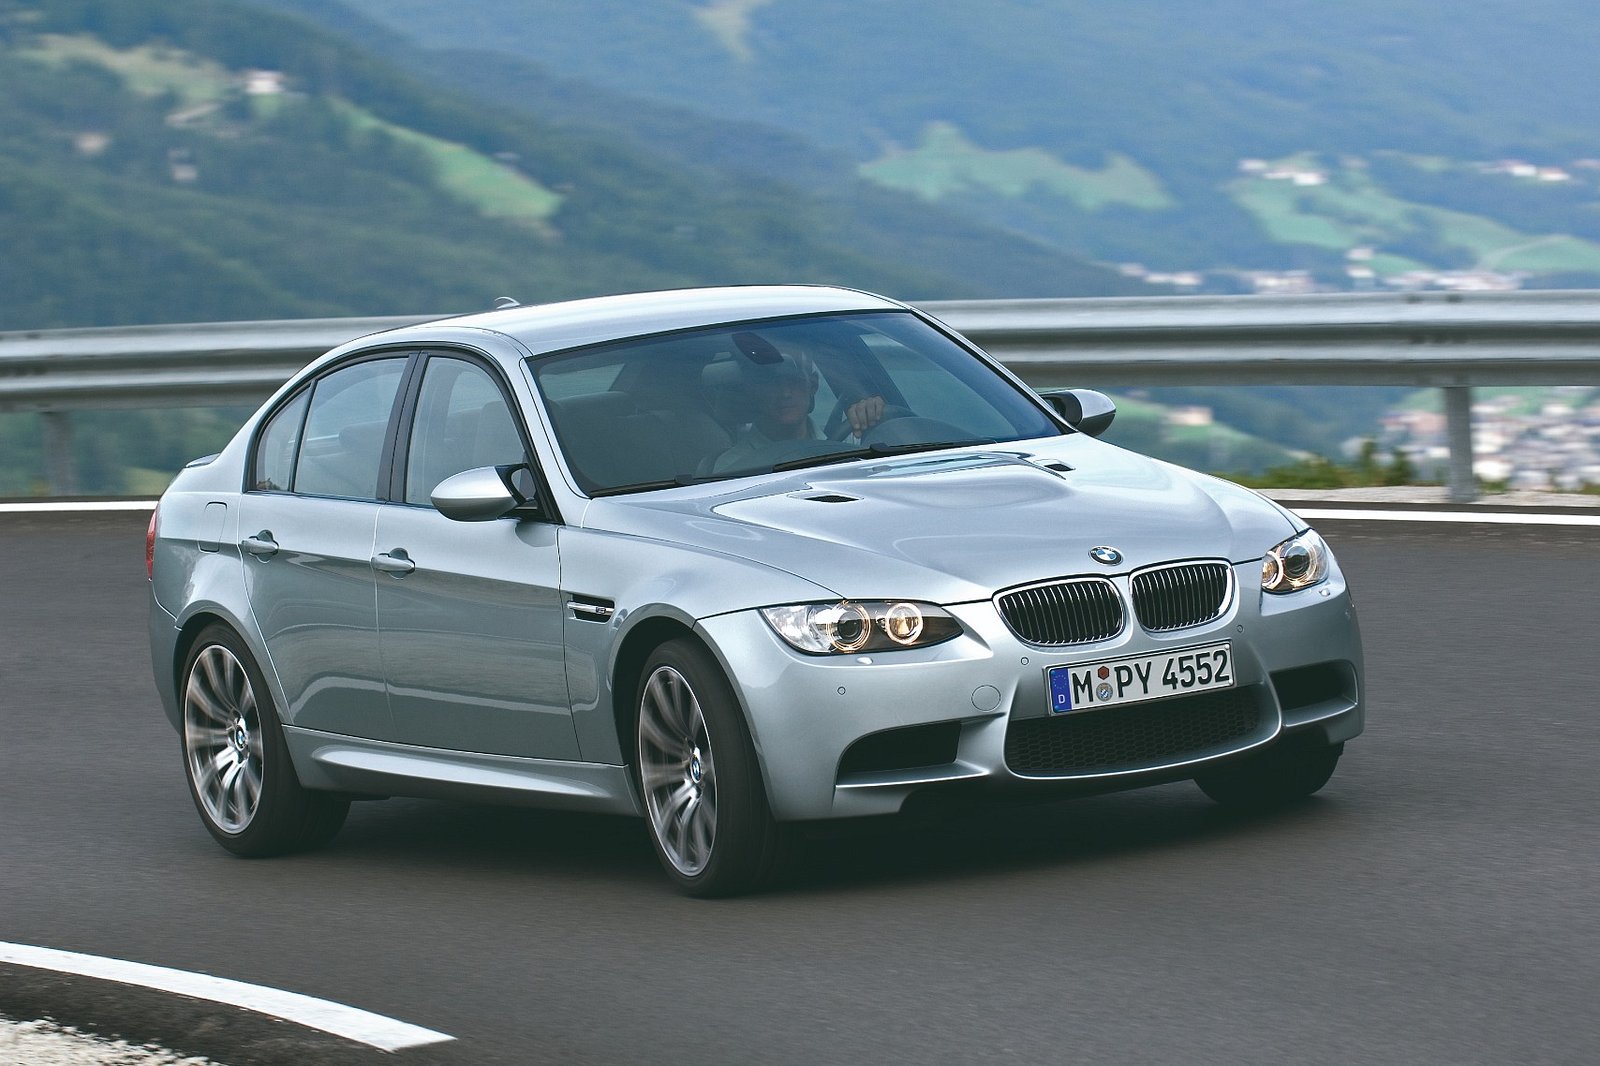 审视每一代 BMW M3 以及它们的特别之处-豁天游|活田酉 一个专门分享有趣的信息，激发人们的求知欲。